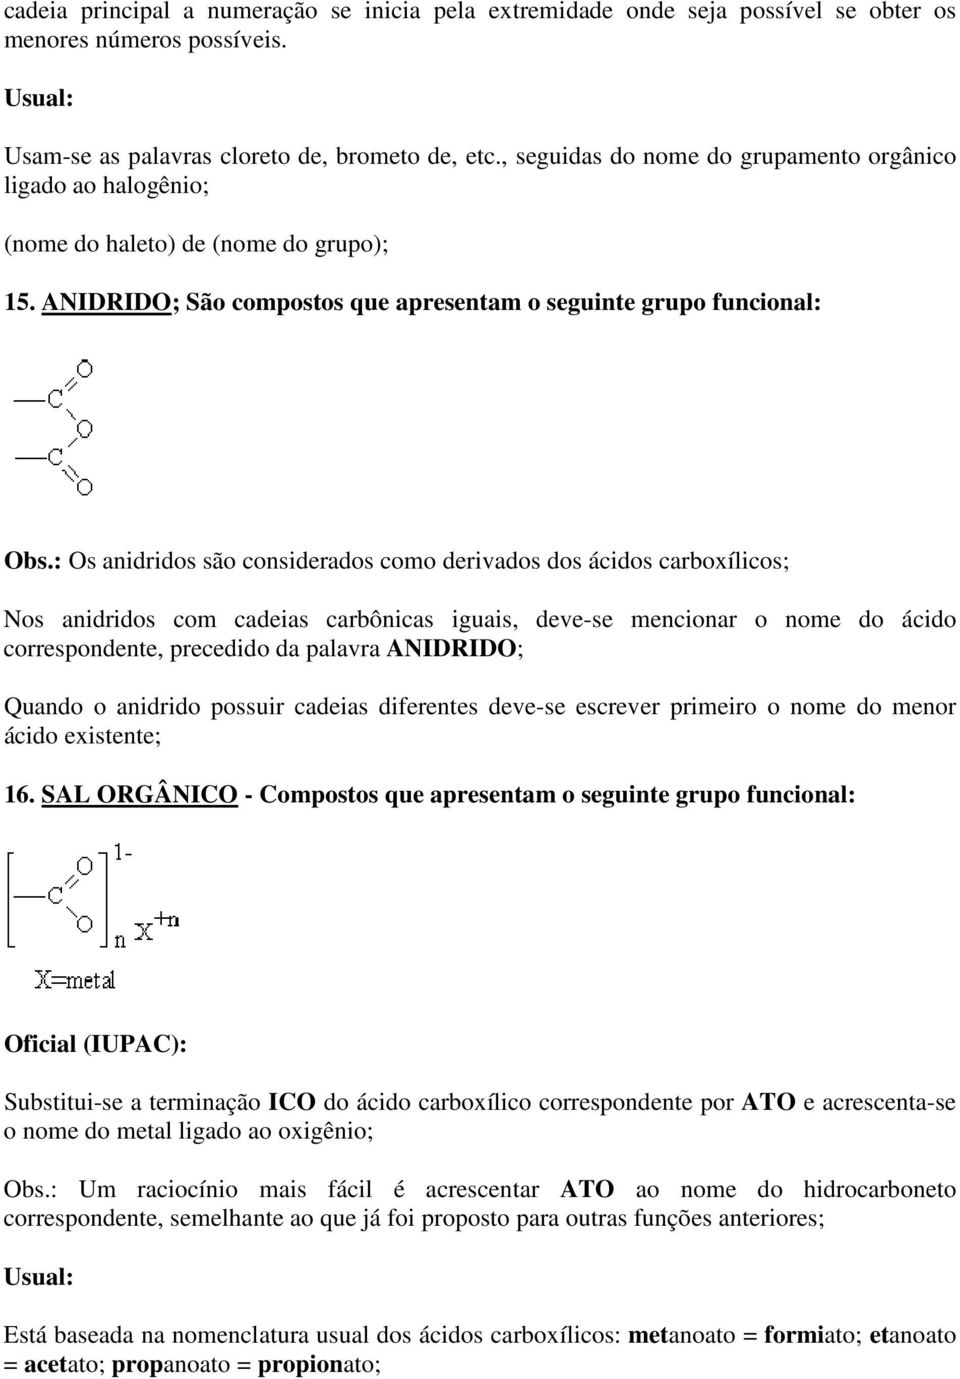 : Os anidridos são considerados como derivados dos ácidos carboxílicos; Nos anidridos com cadeias carbônicas iguais, deve-se mencionar o nome do ácido correspondente, precedido da palavra ANIDRIDO;